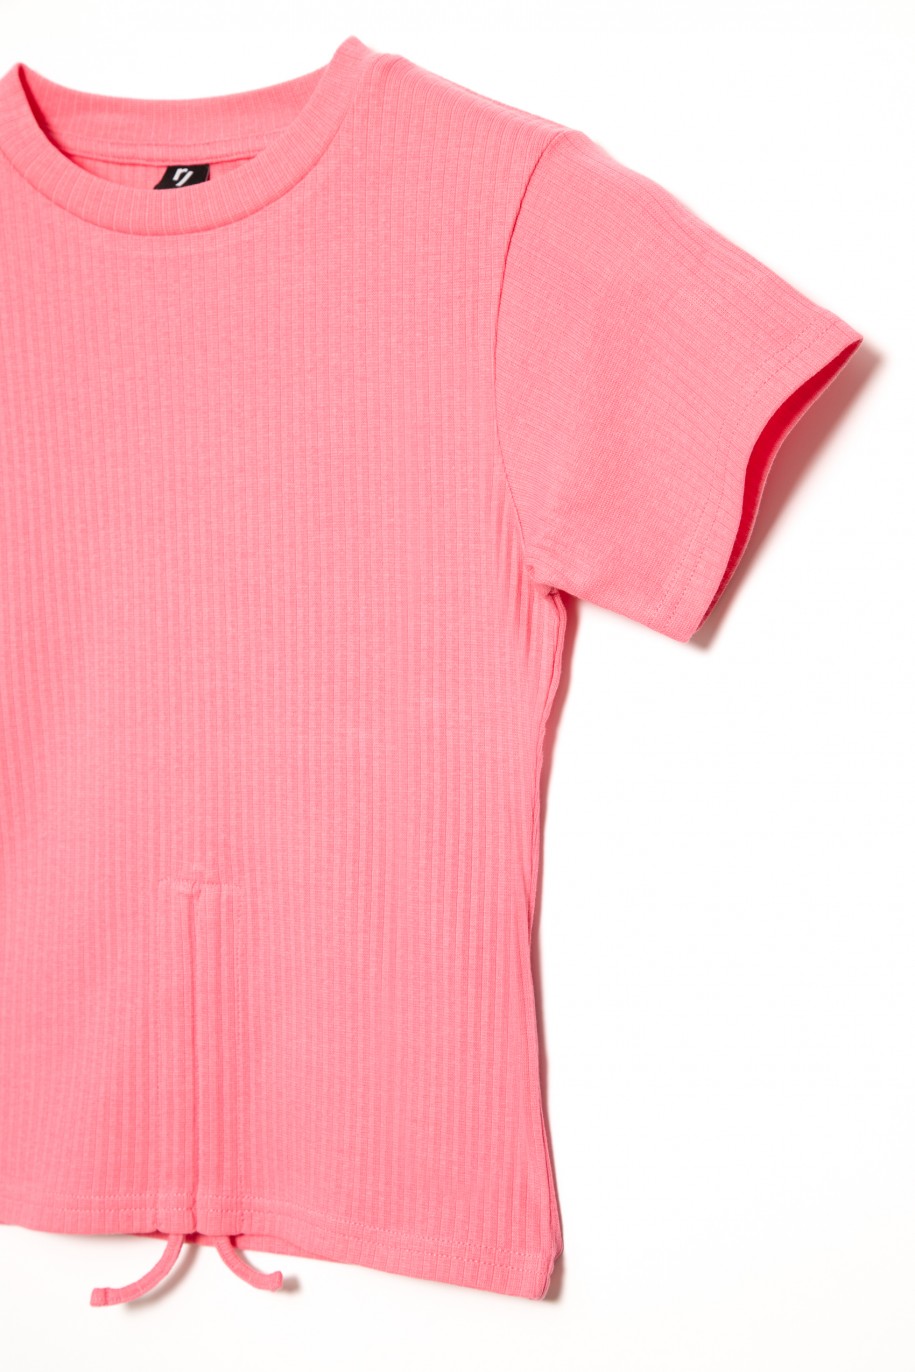 Różowy t-shirt dla dziewczyny z marszczeniem na przodzie - 31835